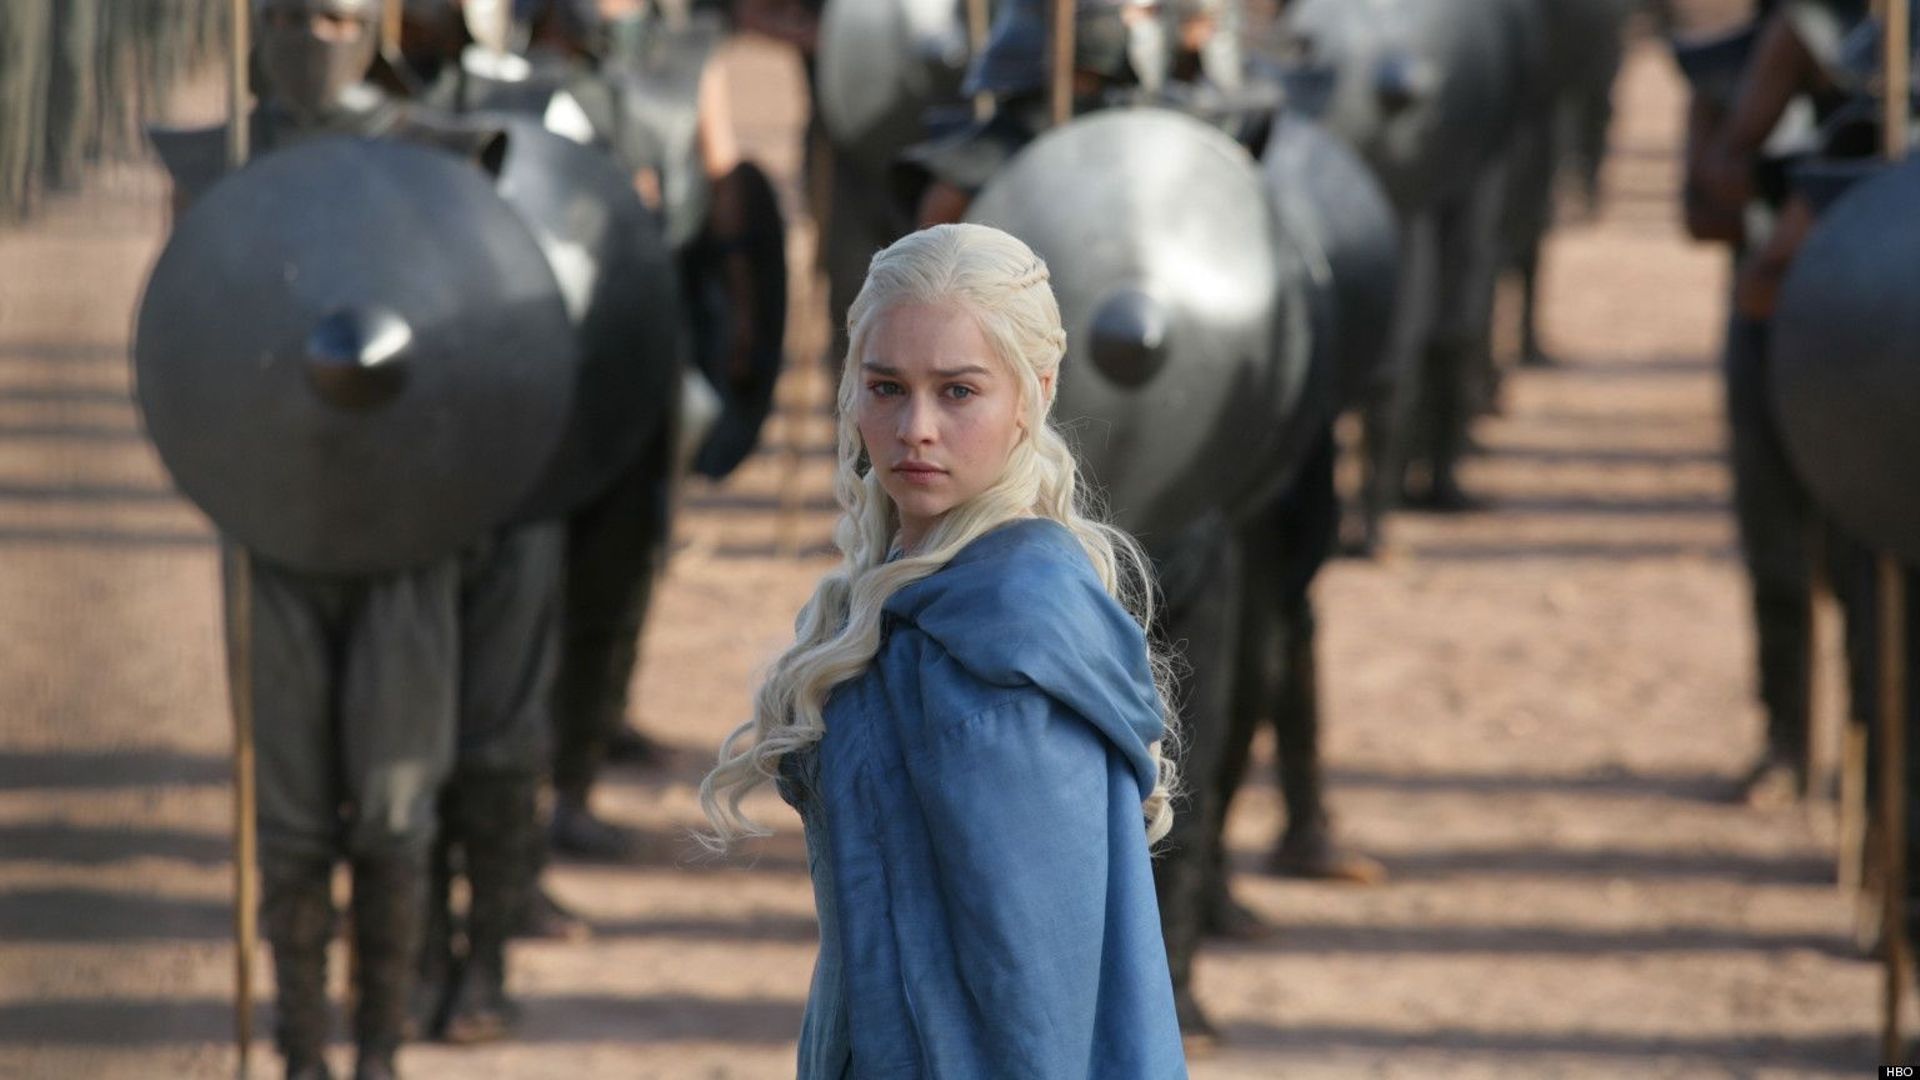 Dans "Game Of Thrones", la langue du Dothraki est notamment parlée par le personnage de Daenerys Targaryen, la mère des dragons